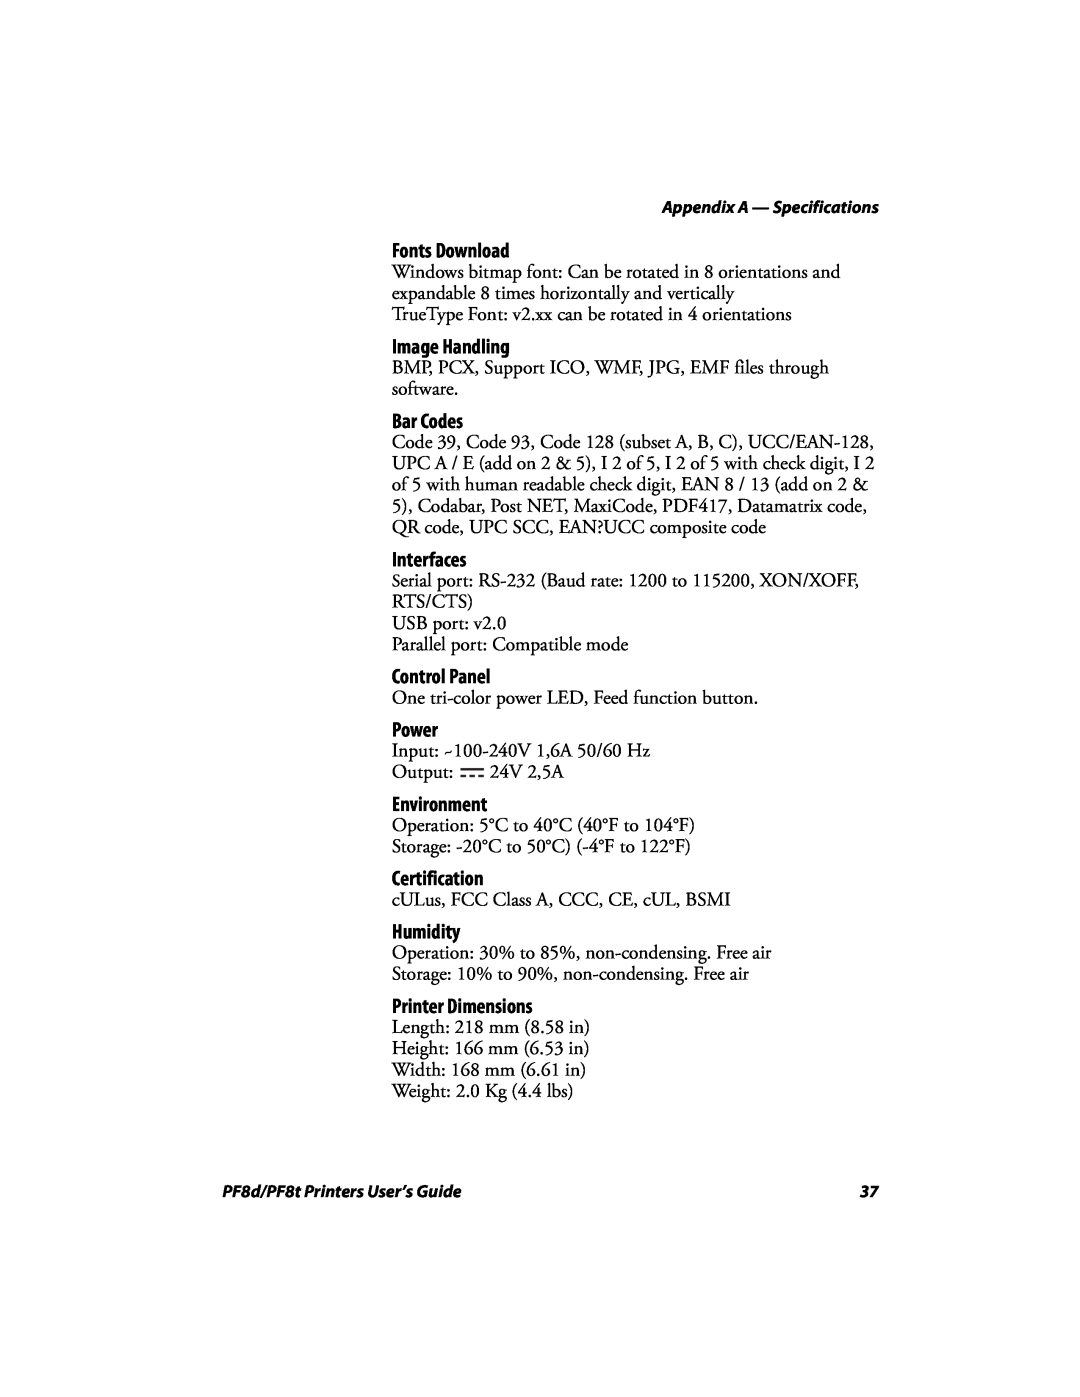 Intermec PF8T, PF8D manual Fonts Download 